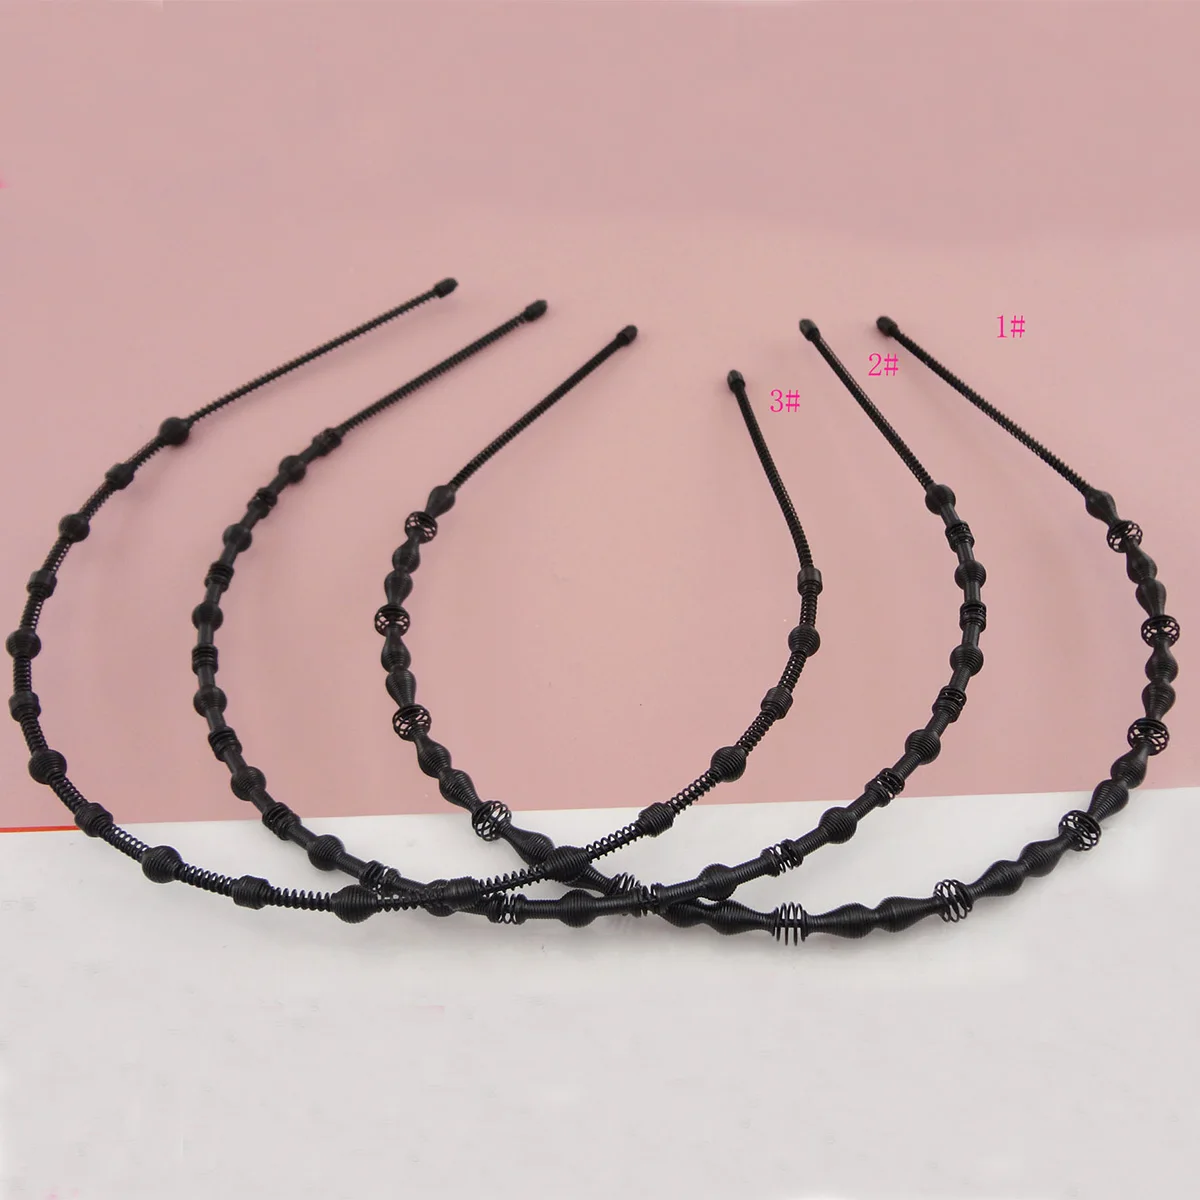 Neue praktische Black Metal Zähne Kamm Haarband HairHoop Stirnband für FraR_gj 